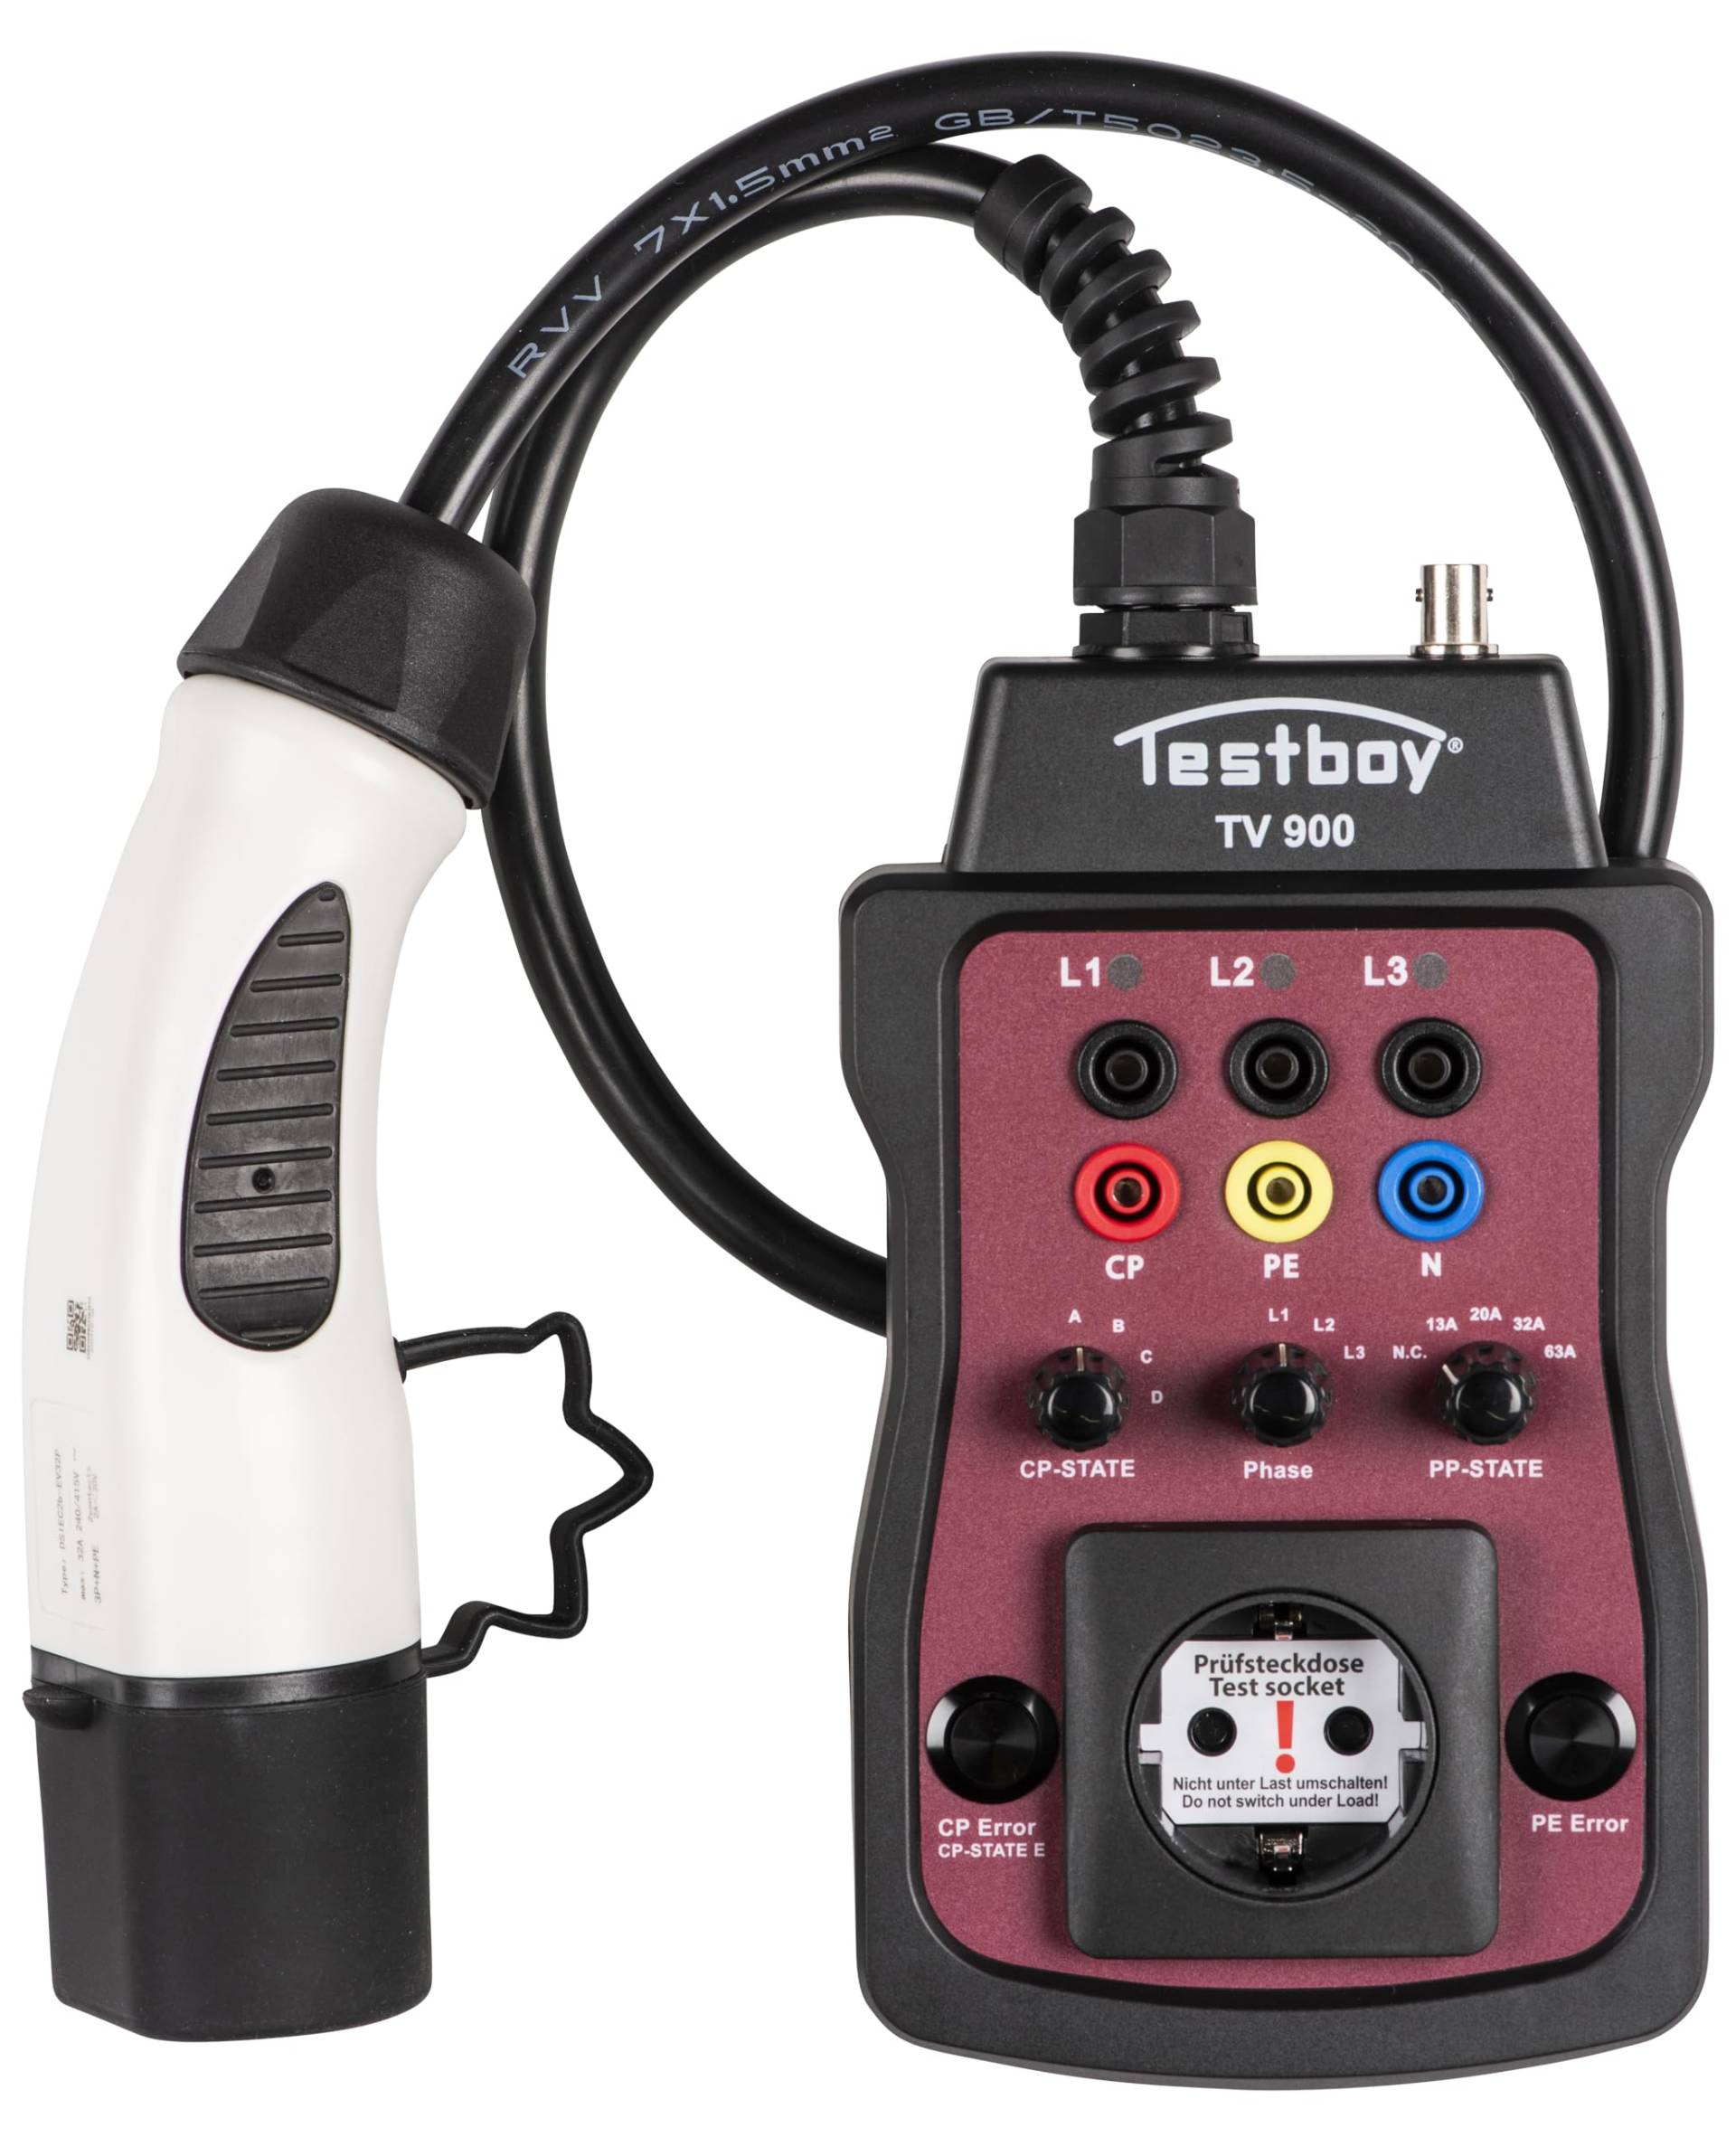 Testboy TV 900 Ladesäulenadapter zur Prüfung von Typ-2 Ladesäulen (Installationstester oder Multimeter anschließbar, integrierte LED, eingebaute Schuko-Steckdose mit Phasenumschaltung), Schwarz/Rot von Testboy